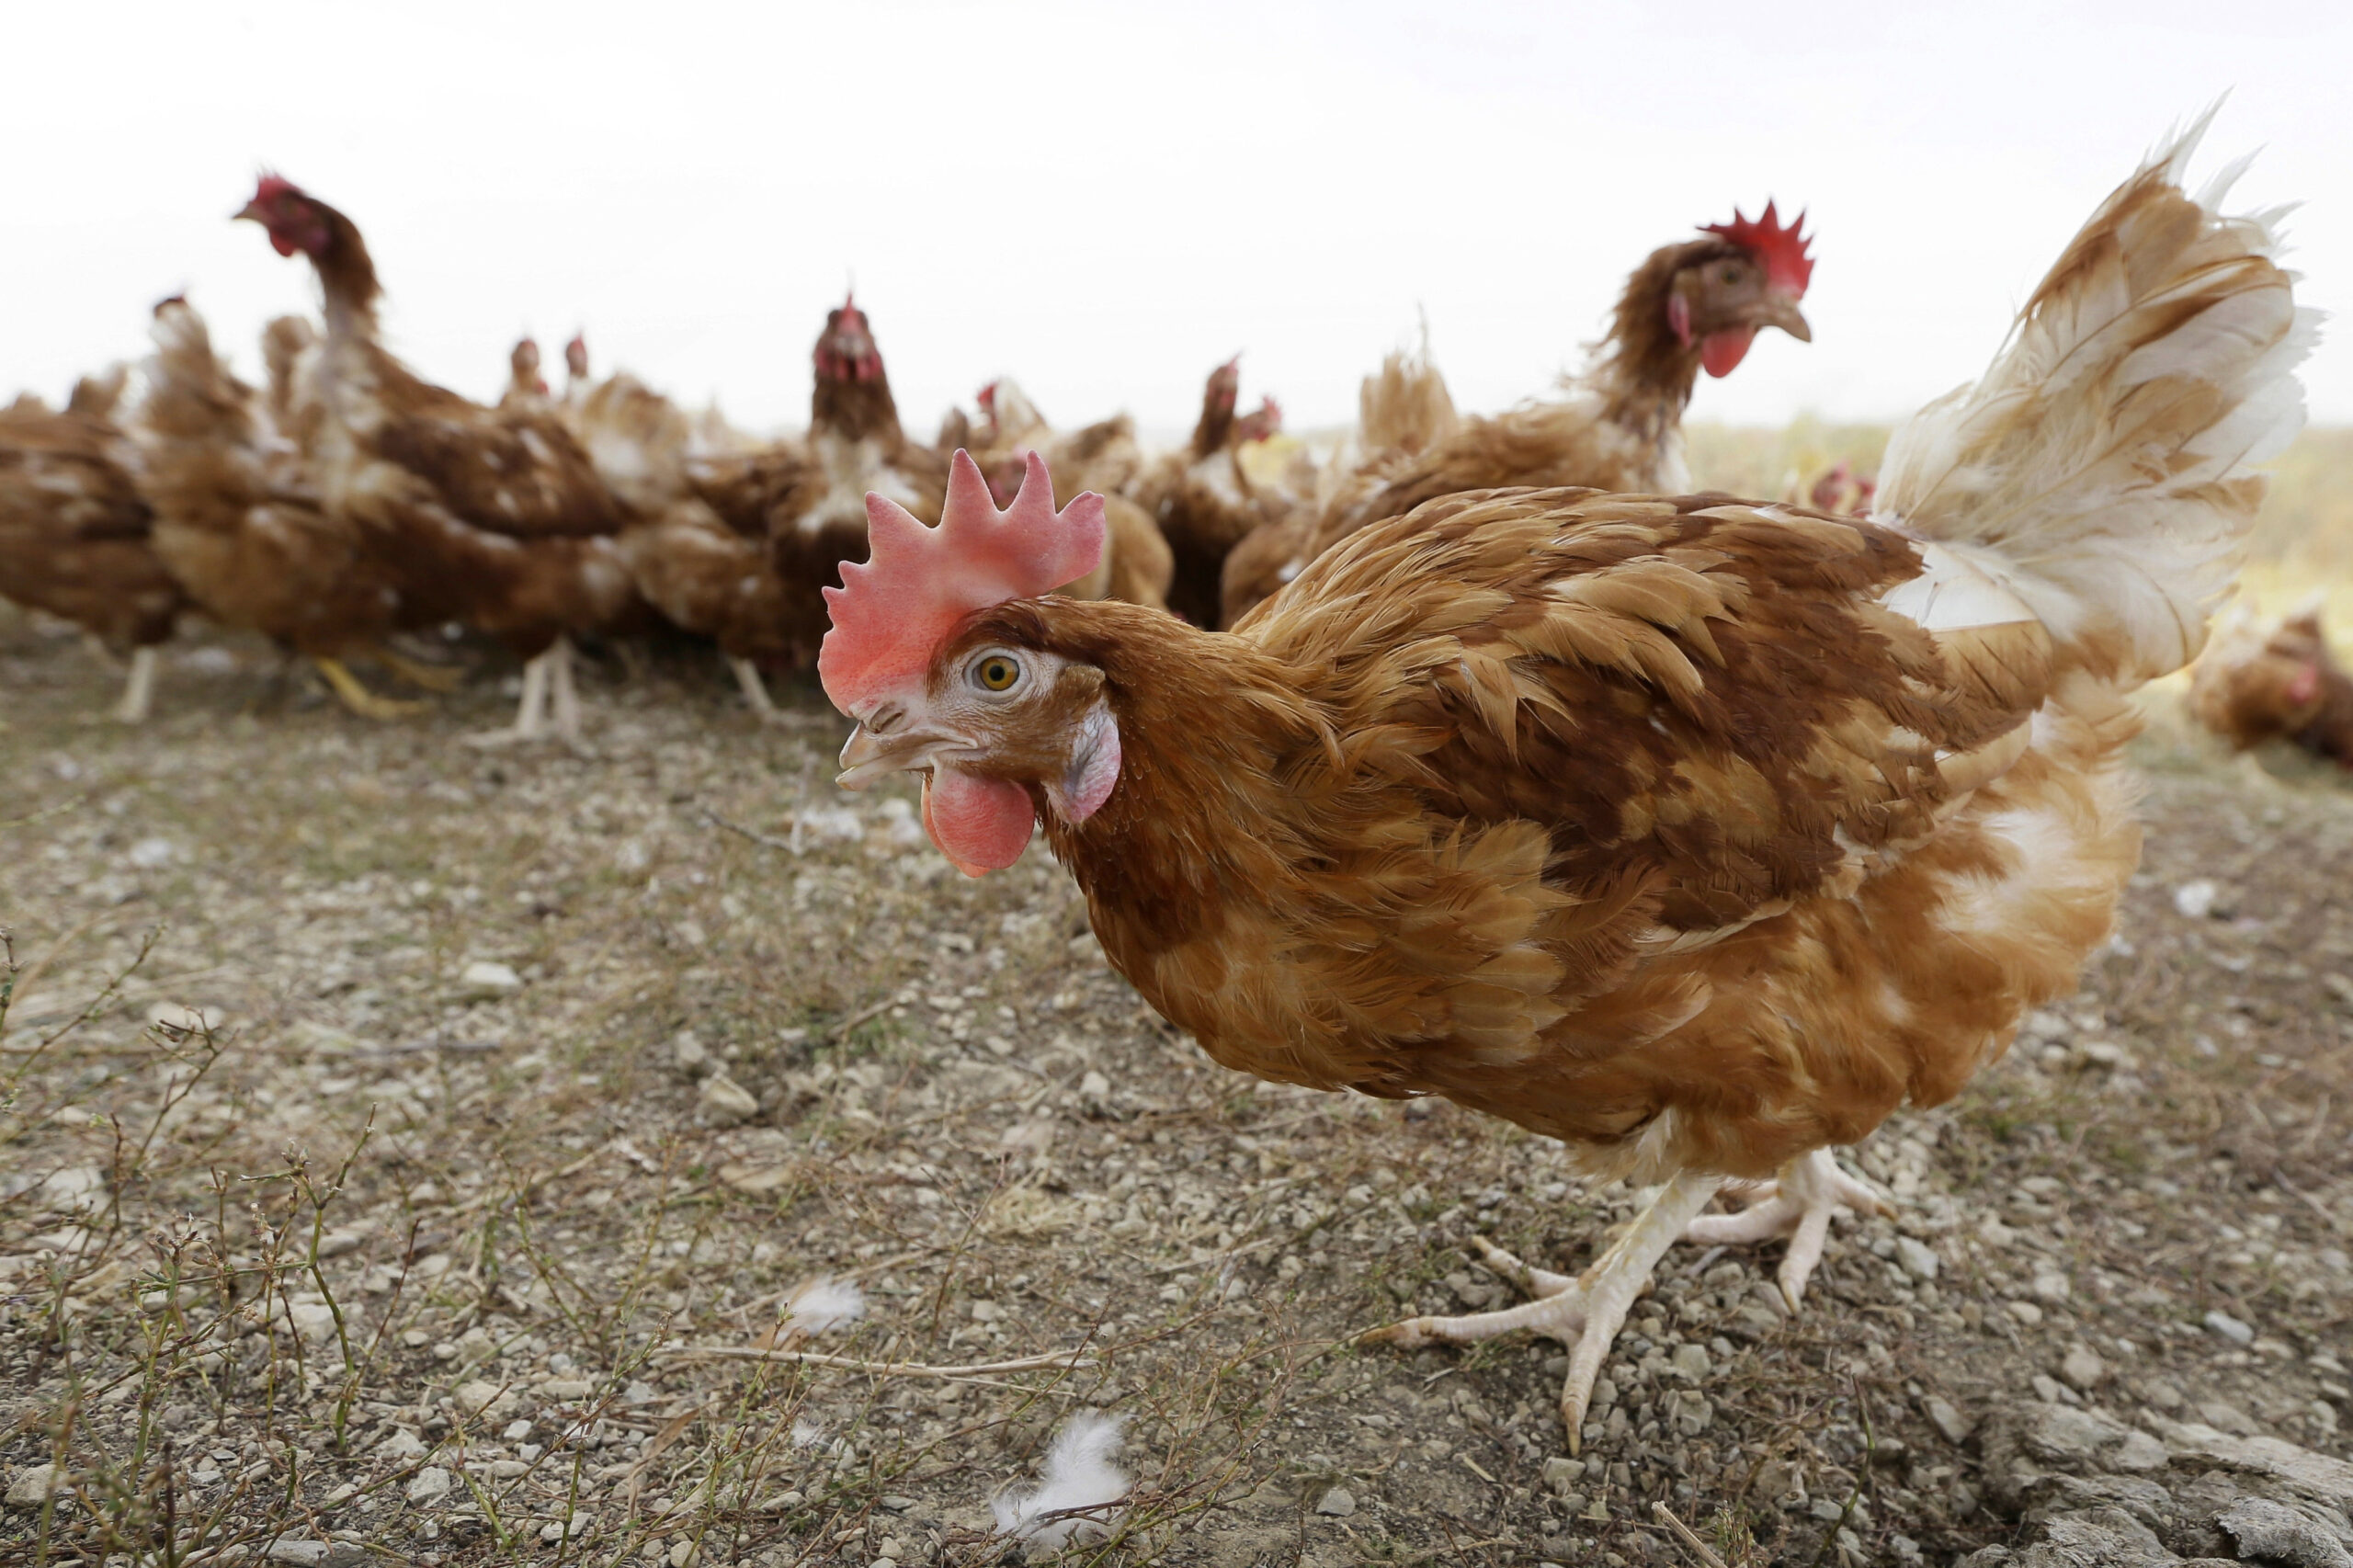 This year’s bird flu epidemic impacting more backyard flocks than in 2015